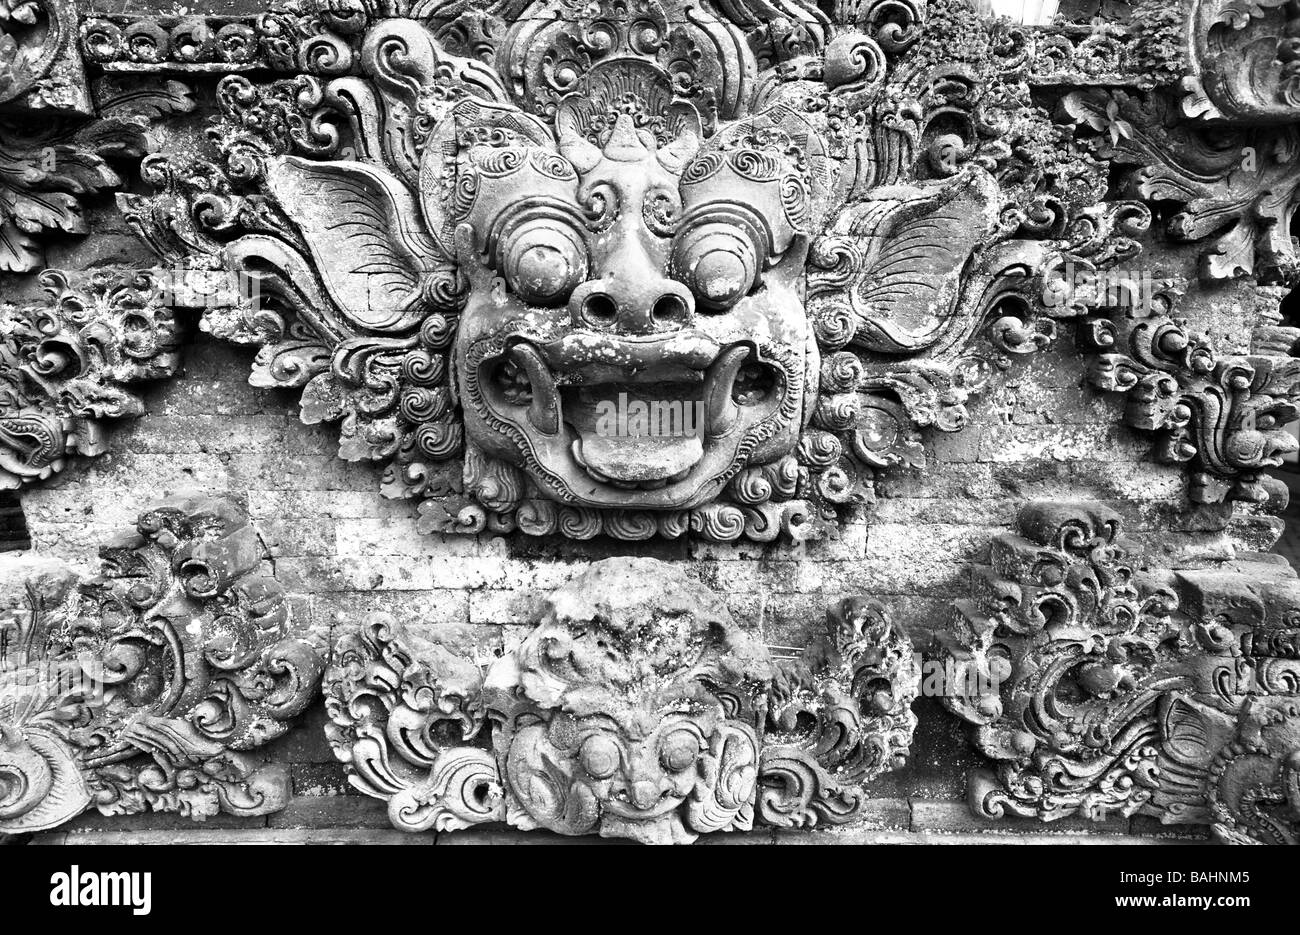 Indonesia Bali Ubud. Barong stone carving, per allontanare gli spiriti maligni. Foto Stock